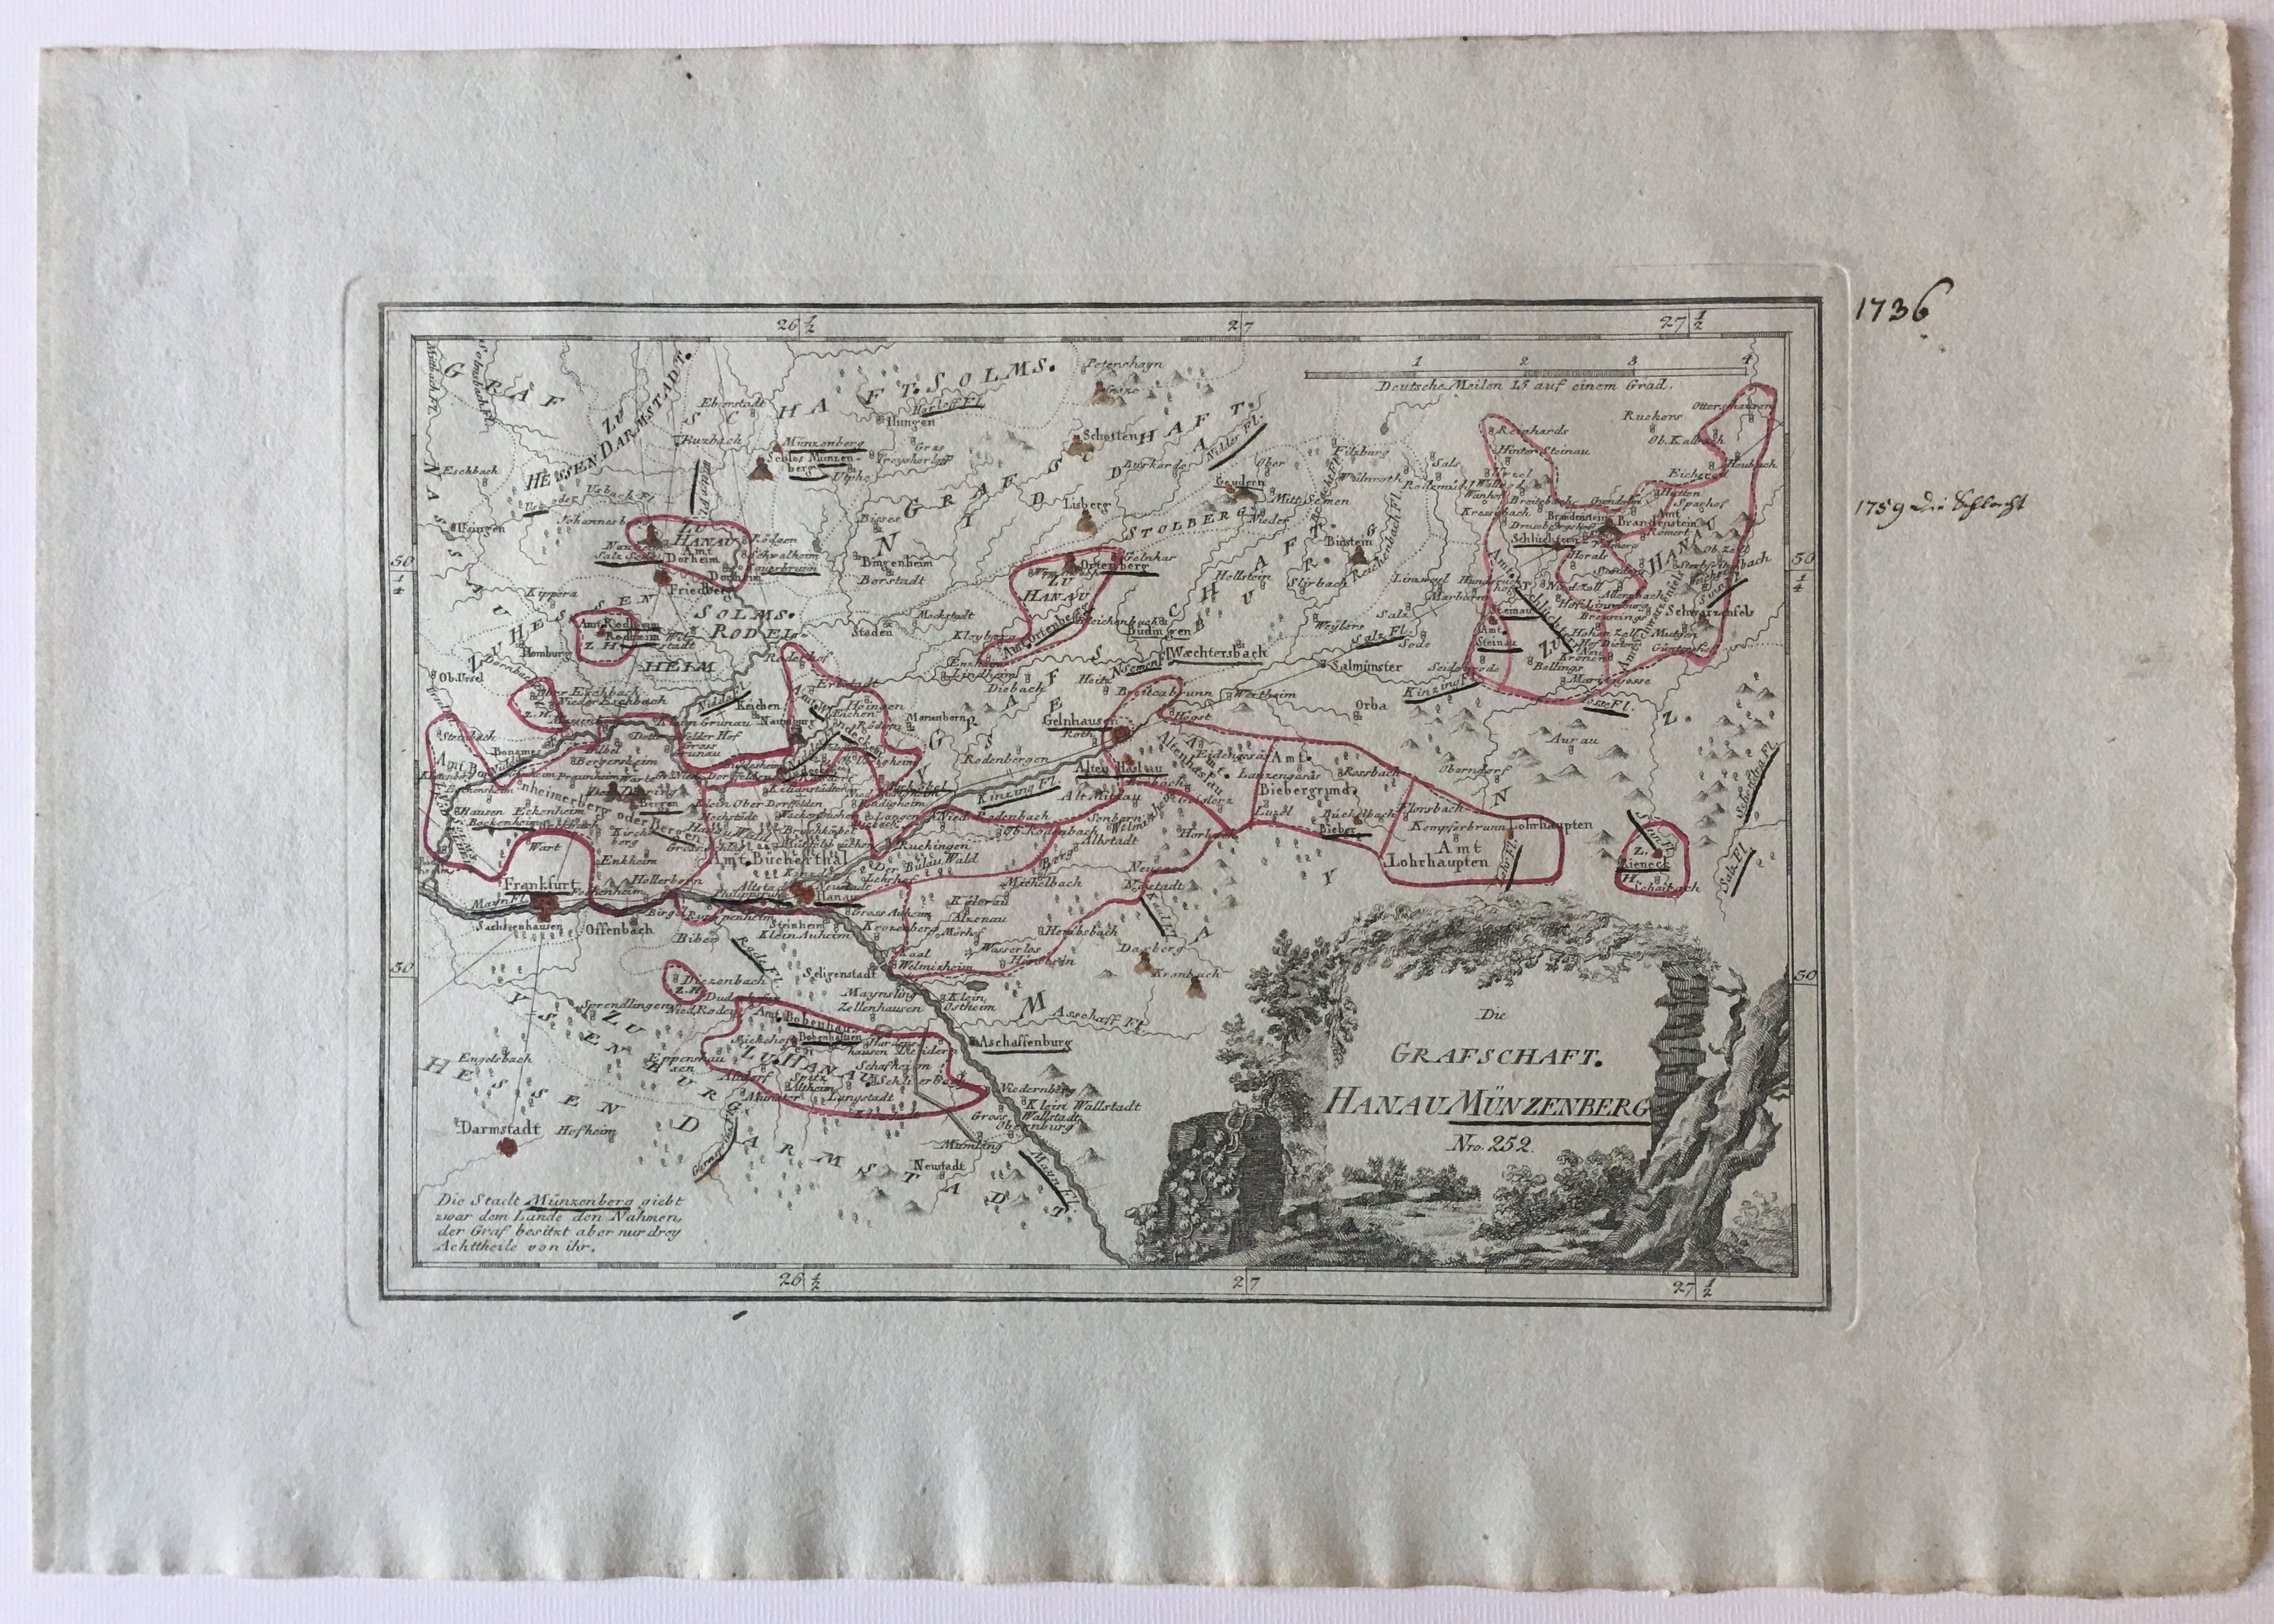 Reilly, Karte der Grafschaft Hanau-Münzenberg, 1791. (Taunus-Rhein-Main - Regionalgeschichtliche Sammlung Dr. Stefan Naas CC BY-NC-SA)